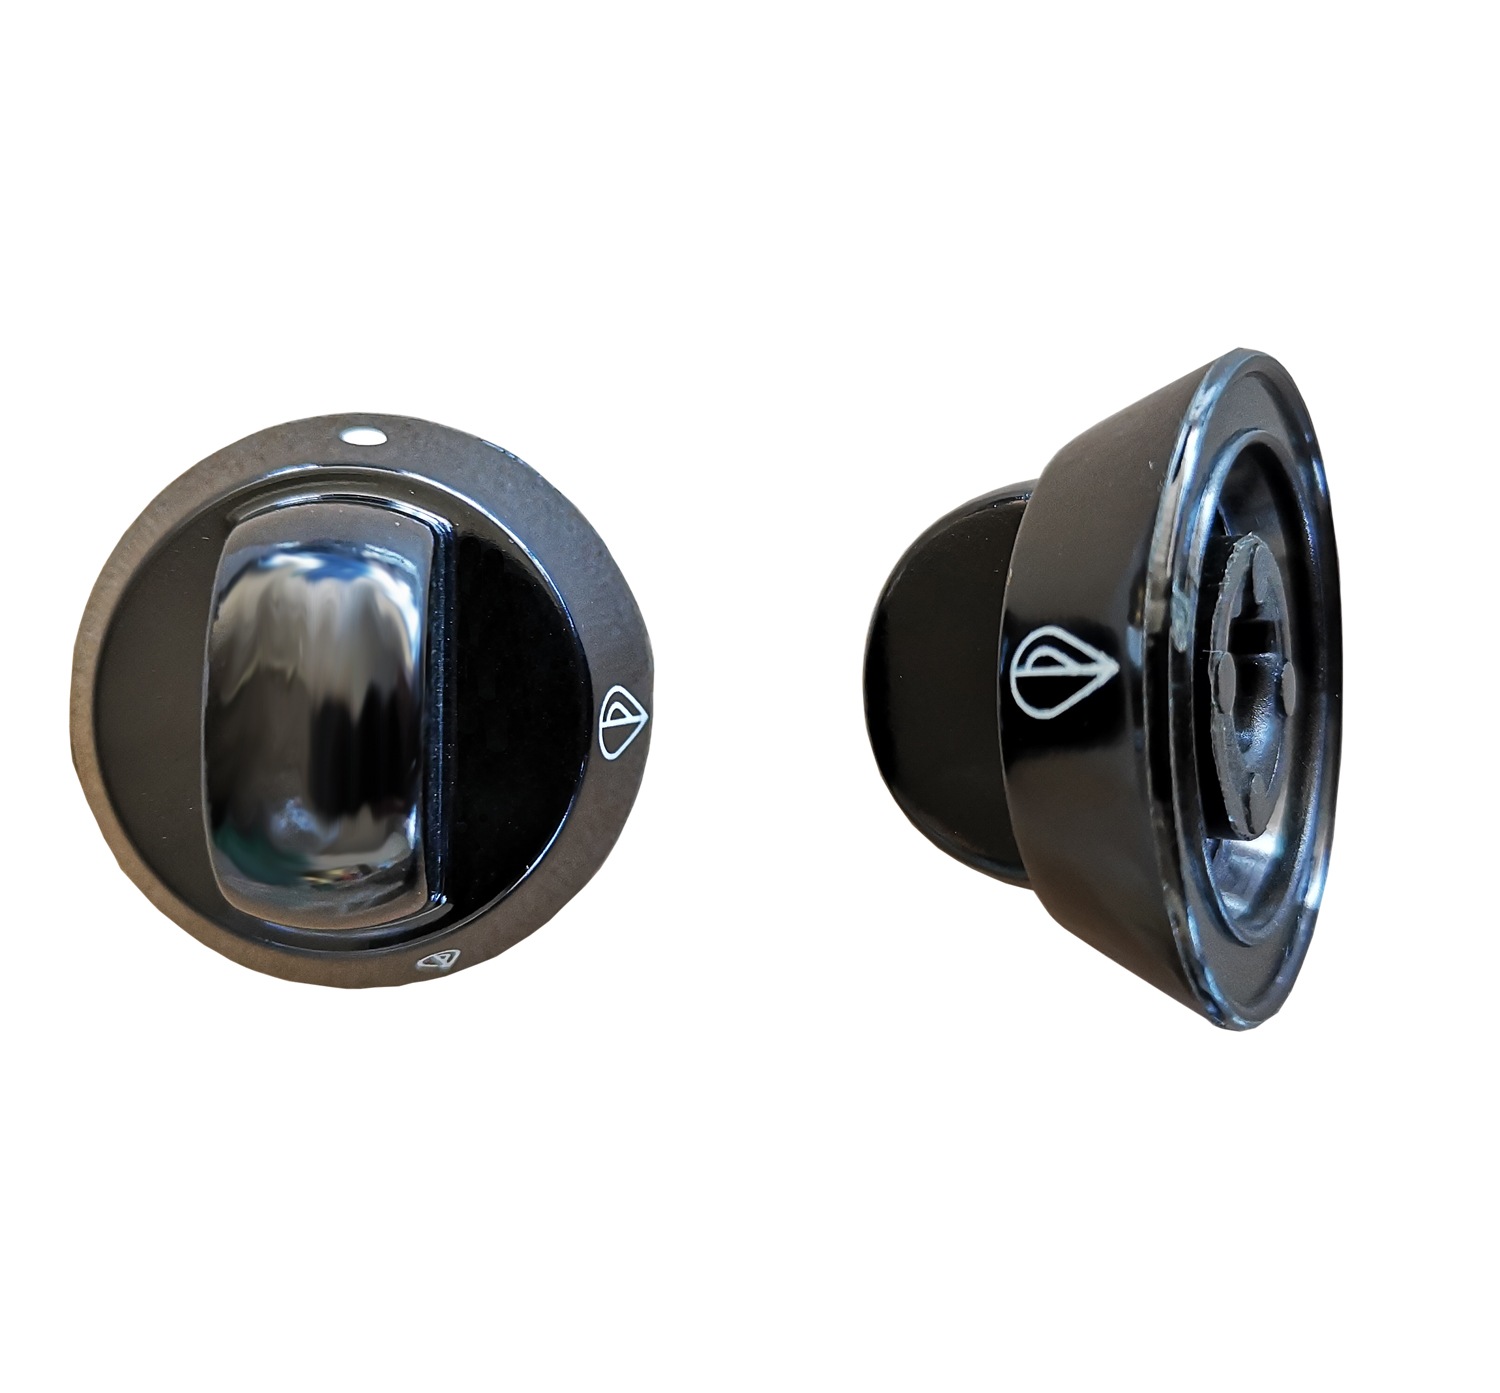 Manopola nera Ariston Indesit diametro esterno 34 mm, perno diametro 7 mm e mozzo raso